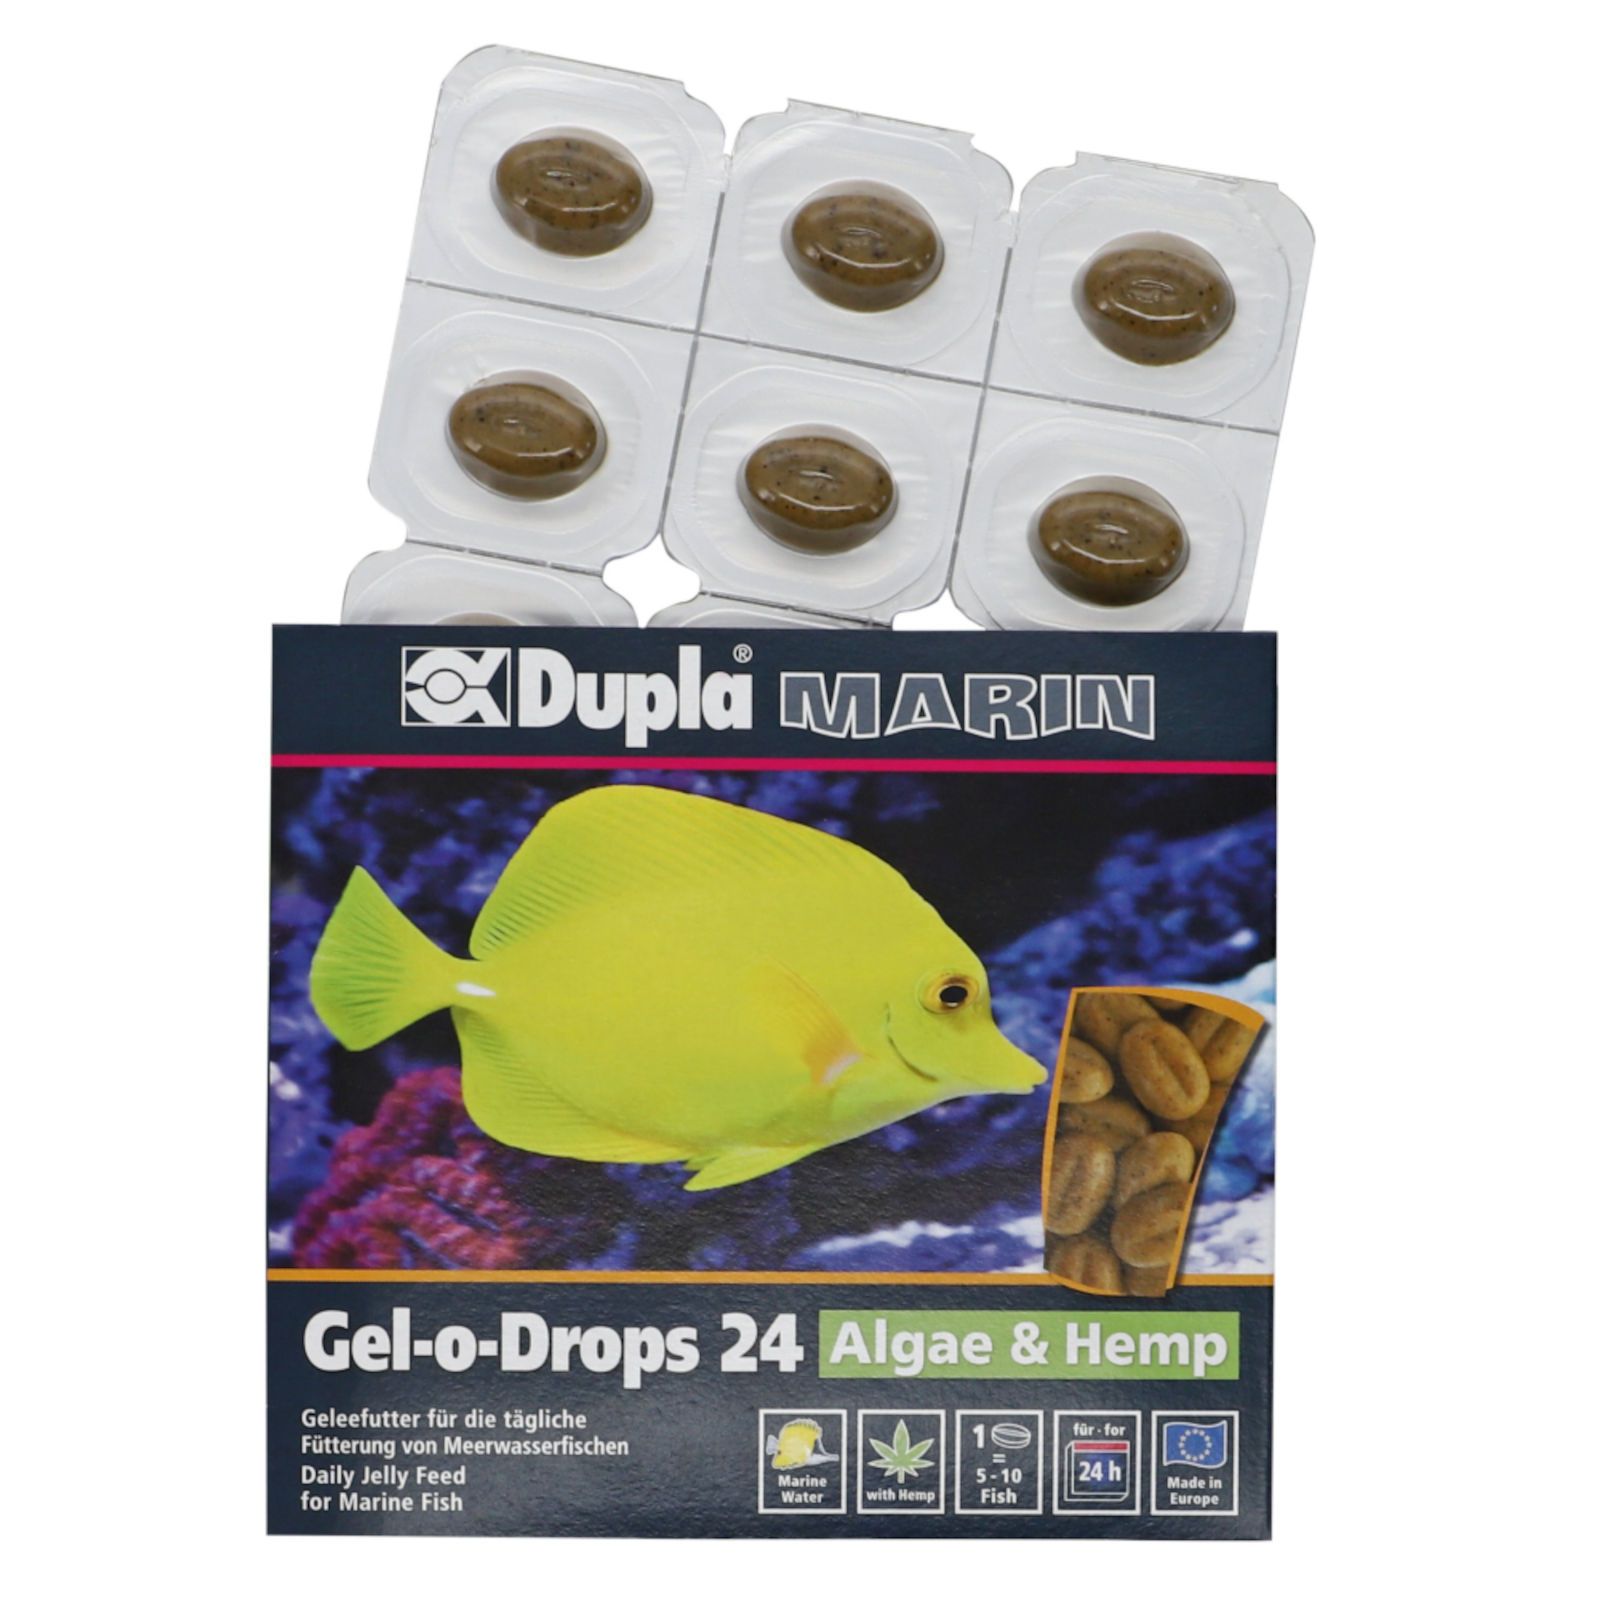 Dupla Marin Zierfischfutter Gel-o-Drops 24 Algae & Hemp